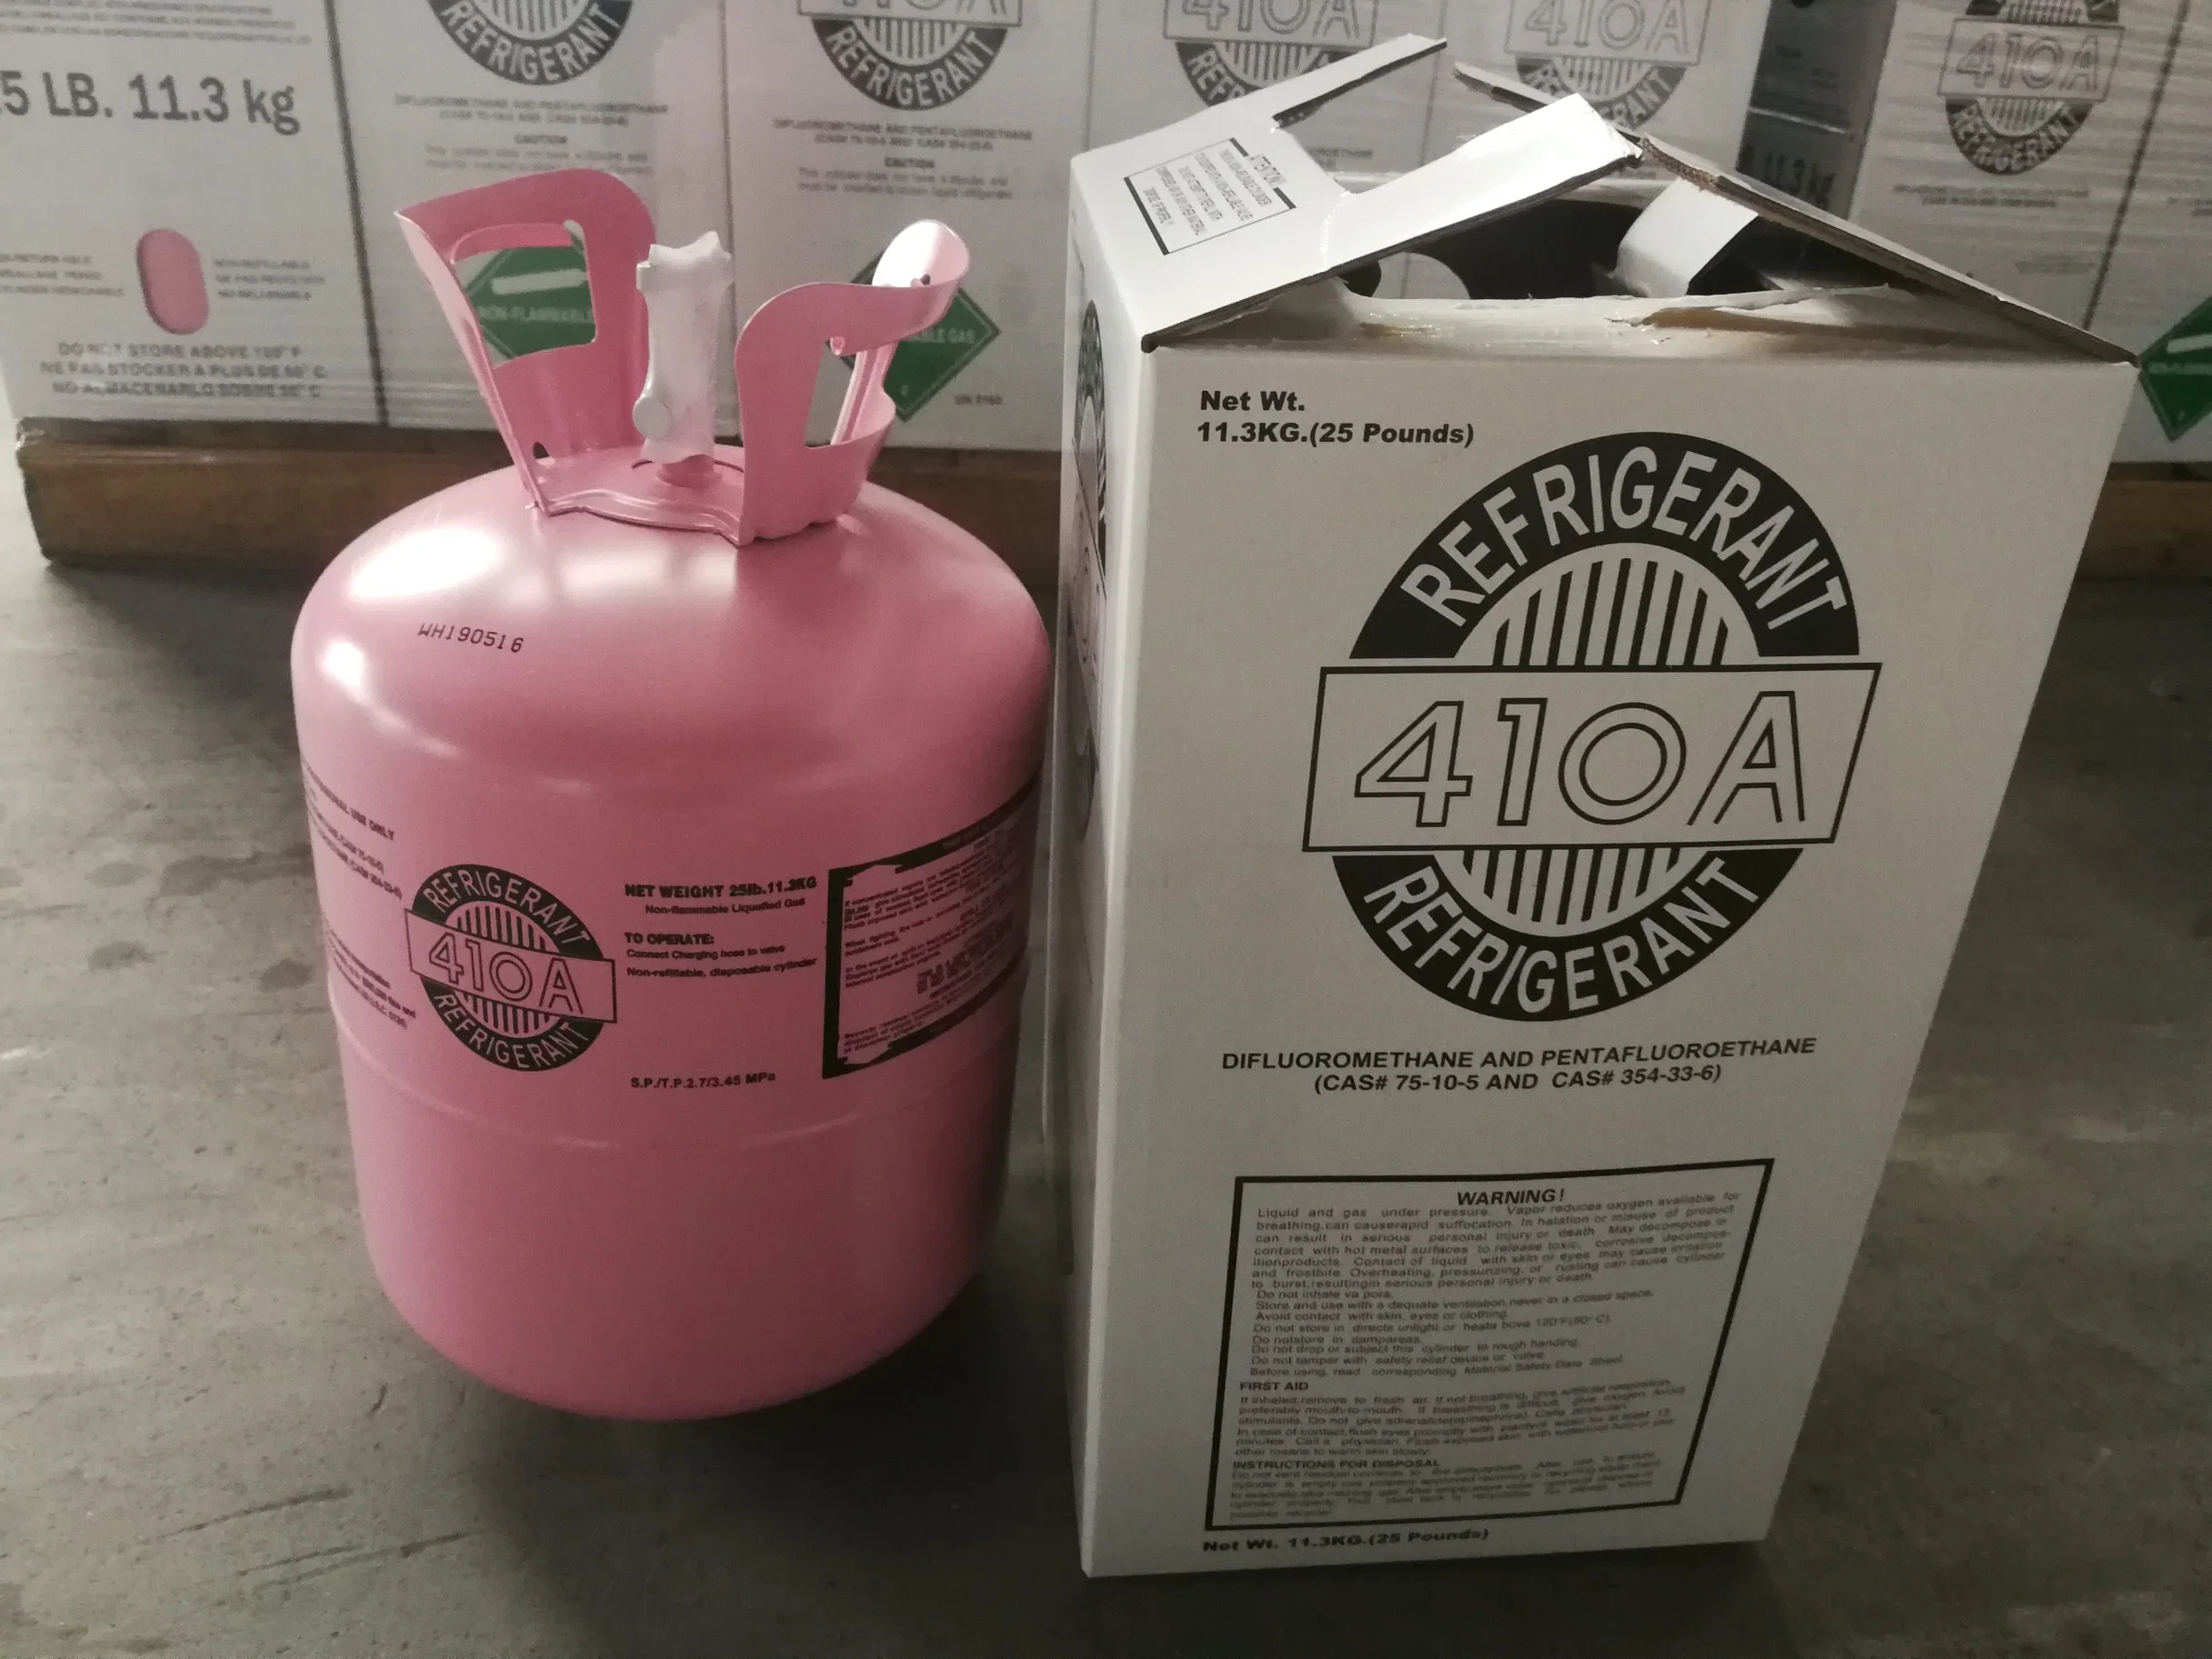 11,3kg Non-Flammable tanque de gas refrigerante R410A.